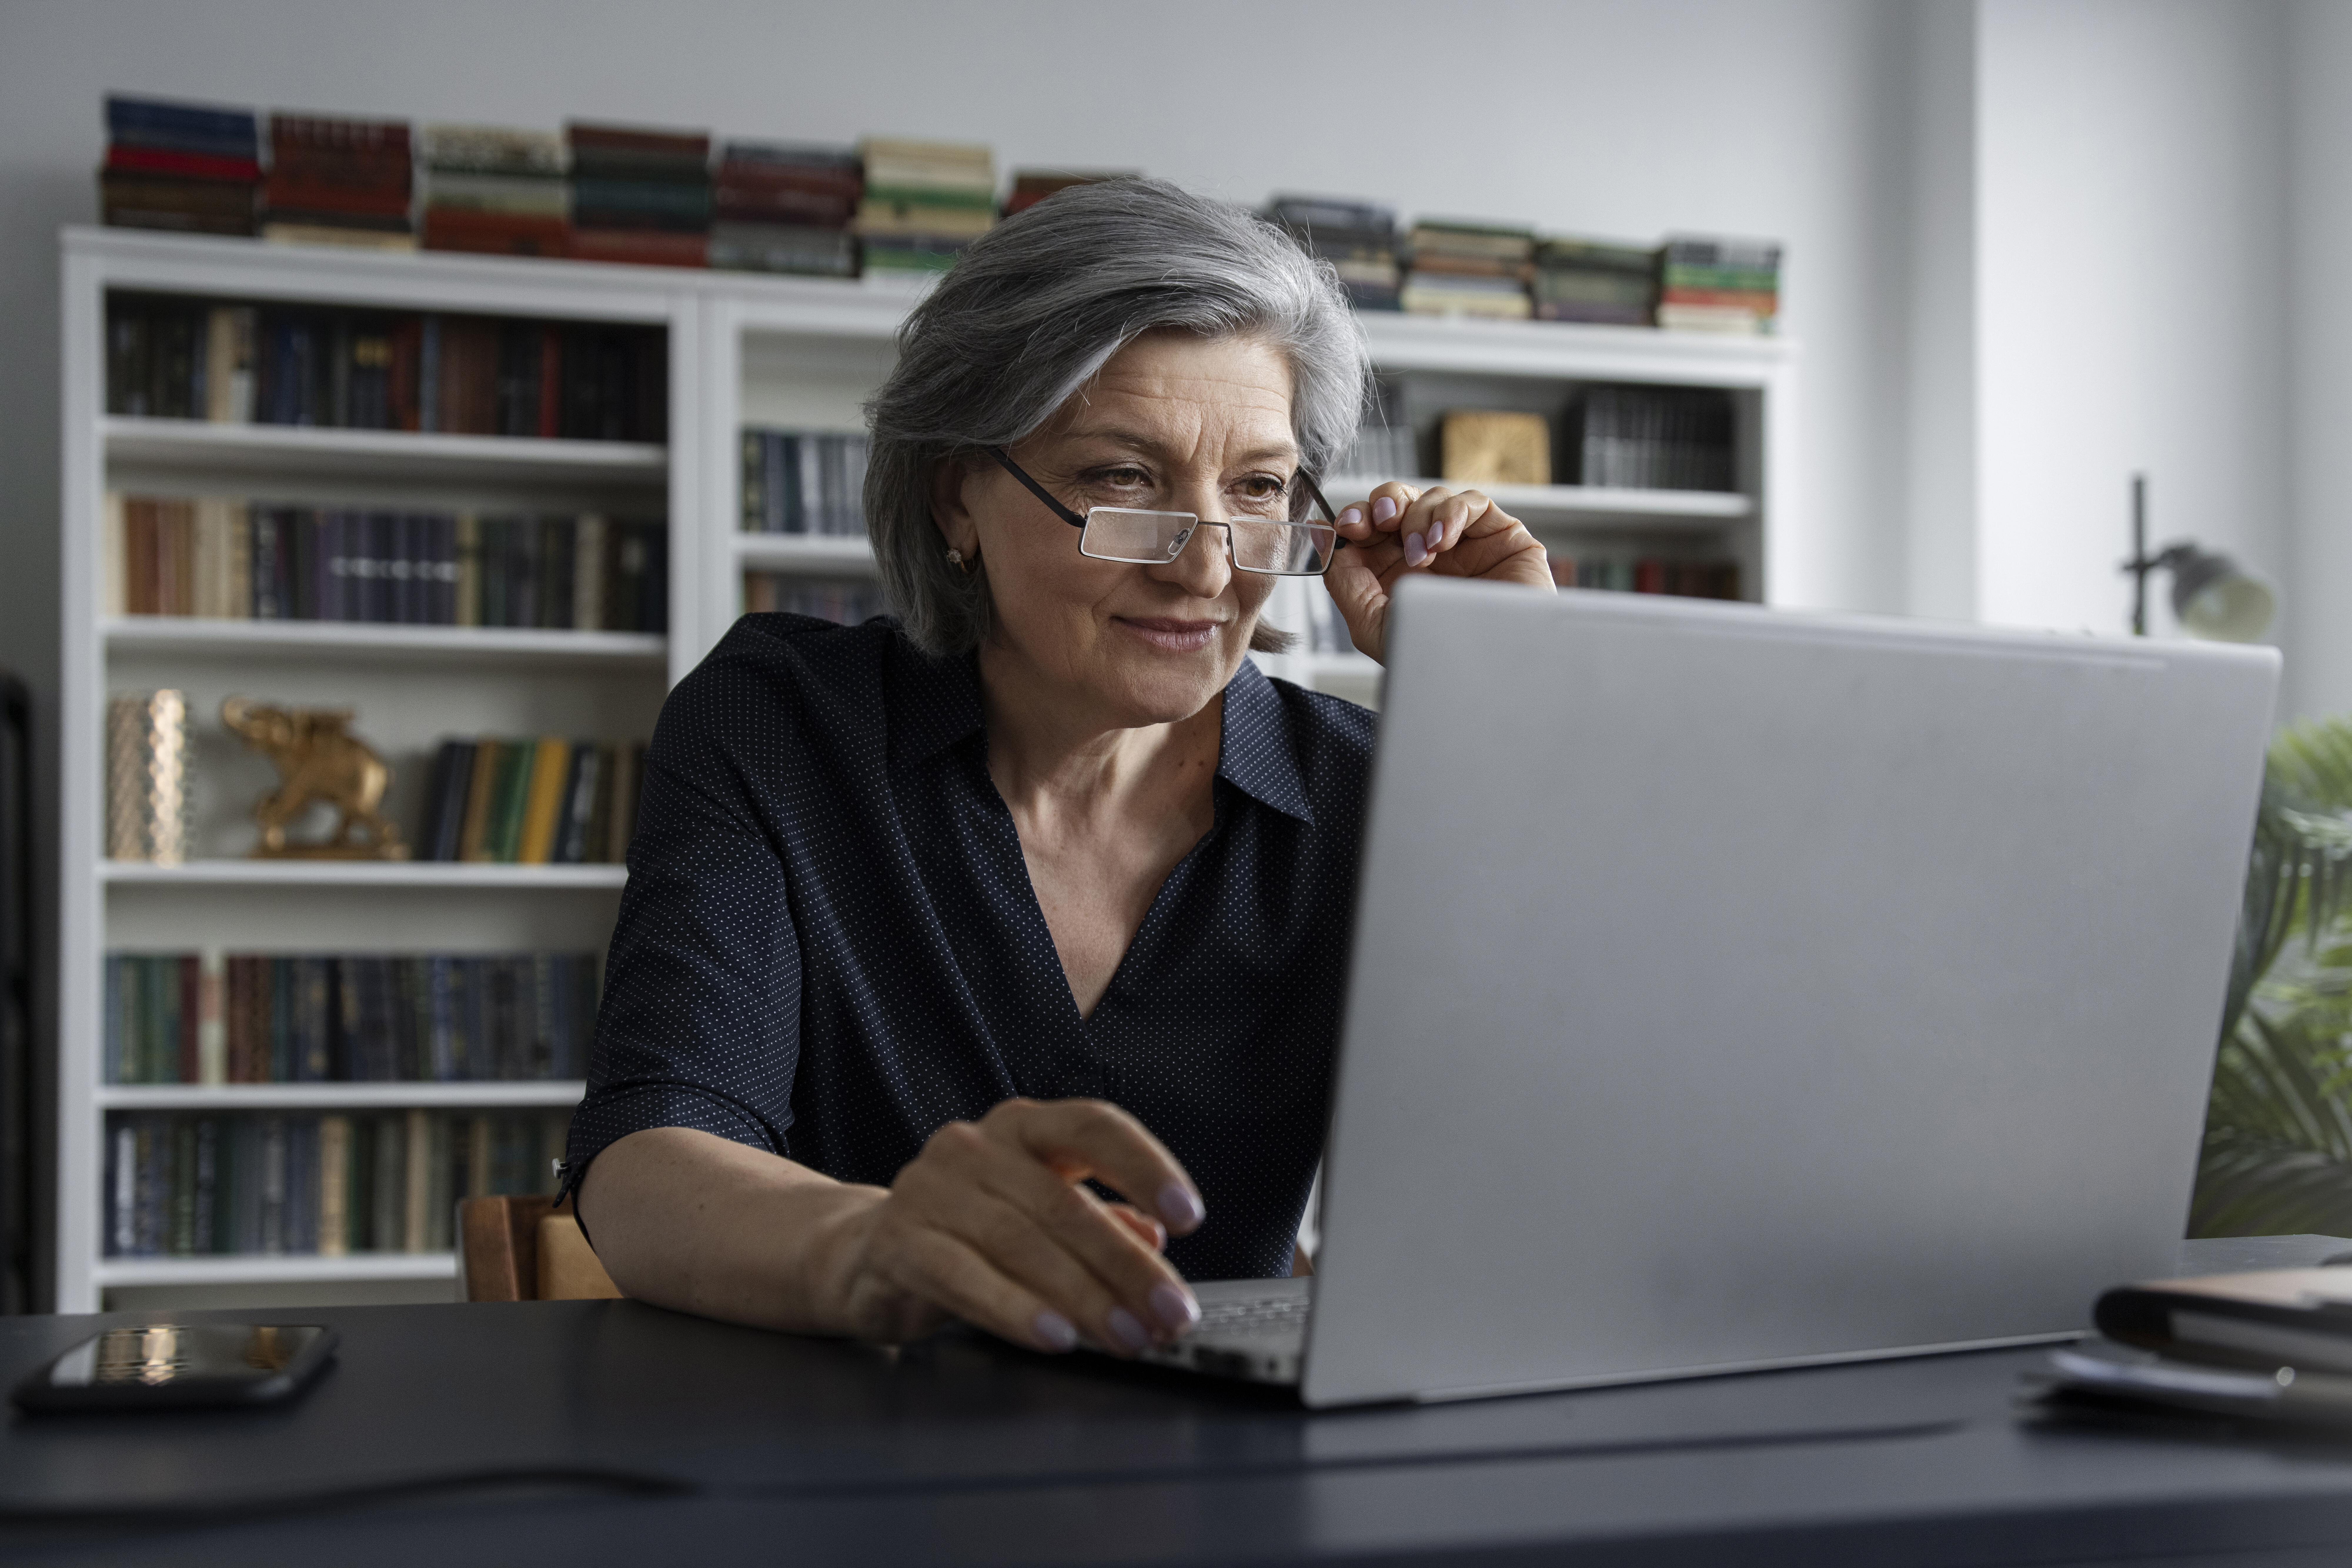 Выплата пенсии: как сообщить об изменении реквизитов онлайн